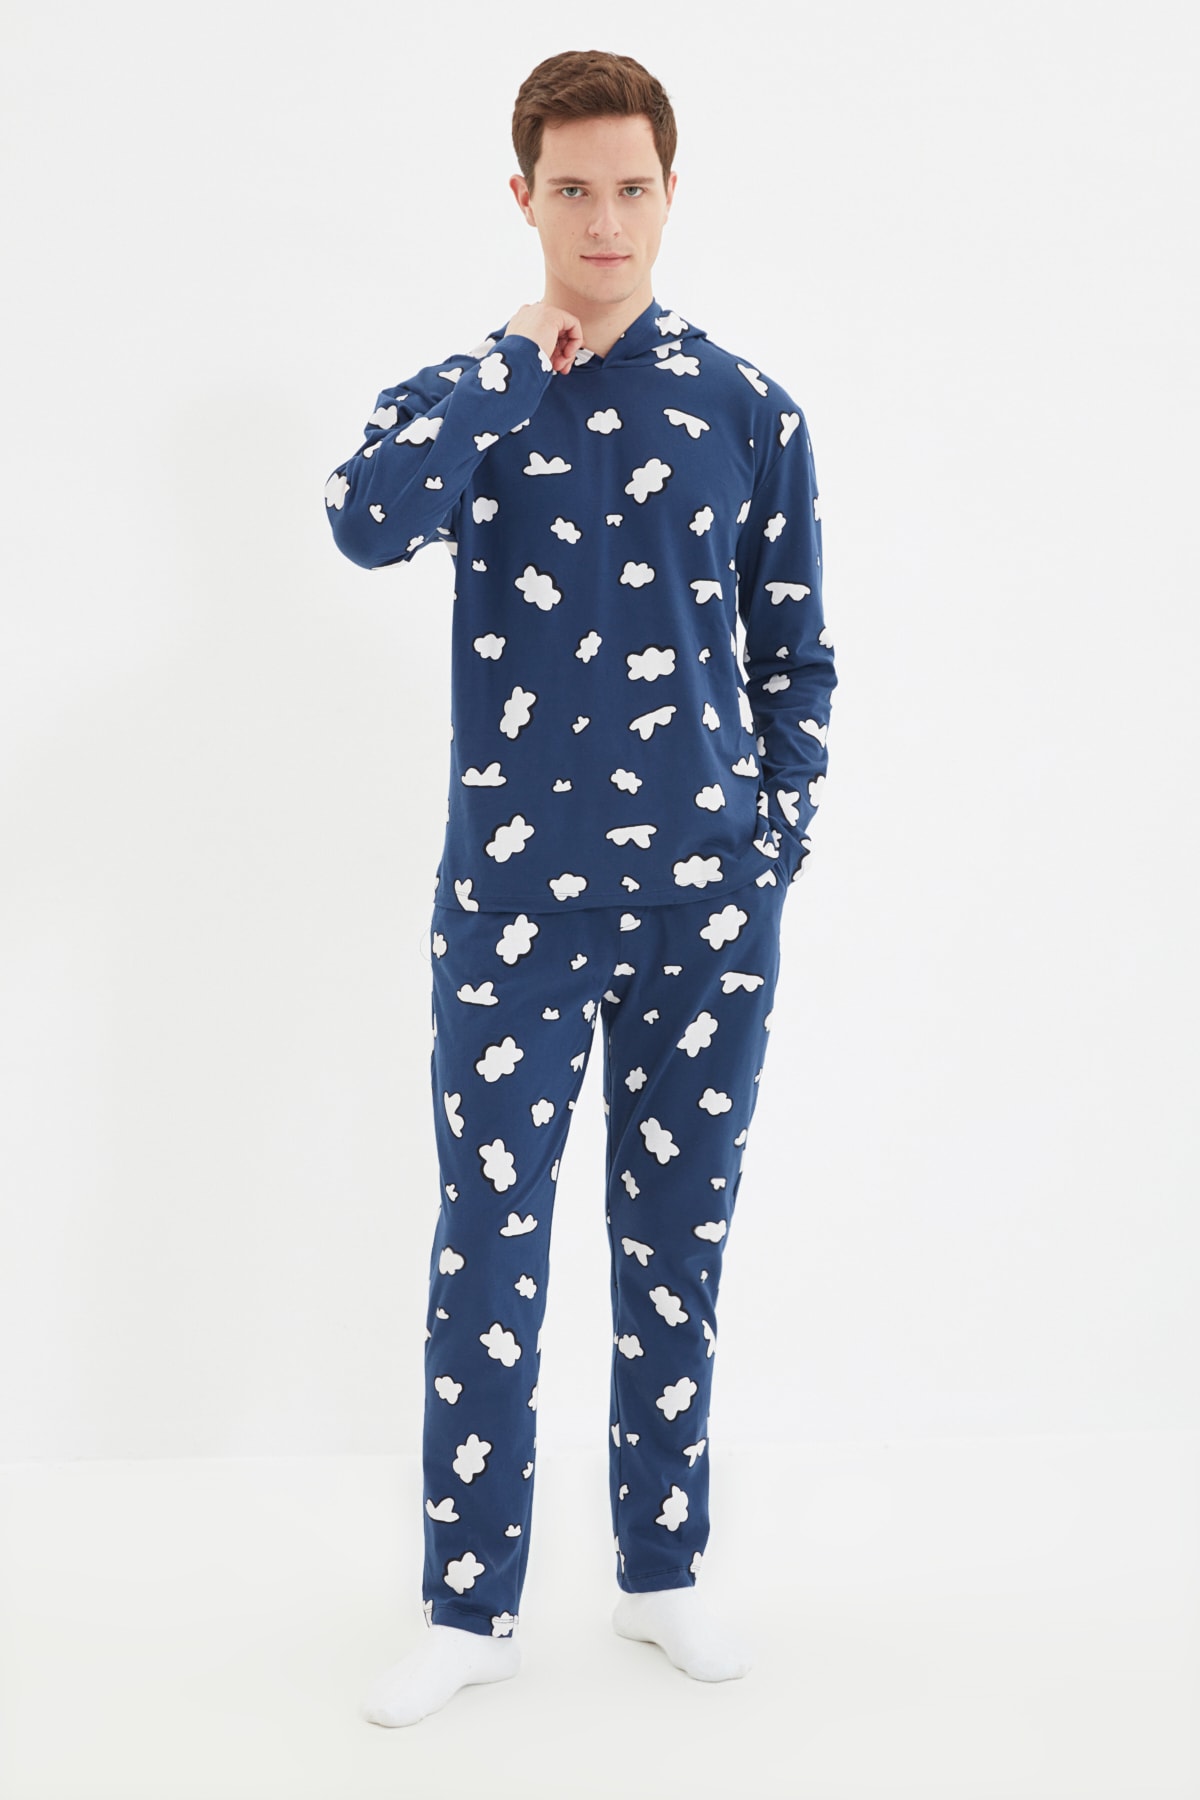 Trendyol Navy Blue Men's Regular Fit Printed Top with Hooded Pajamas Set.